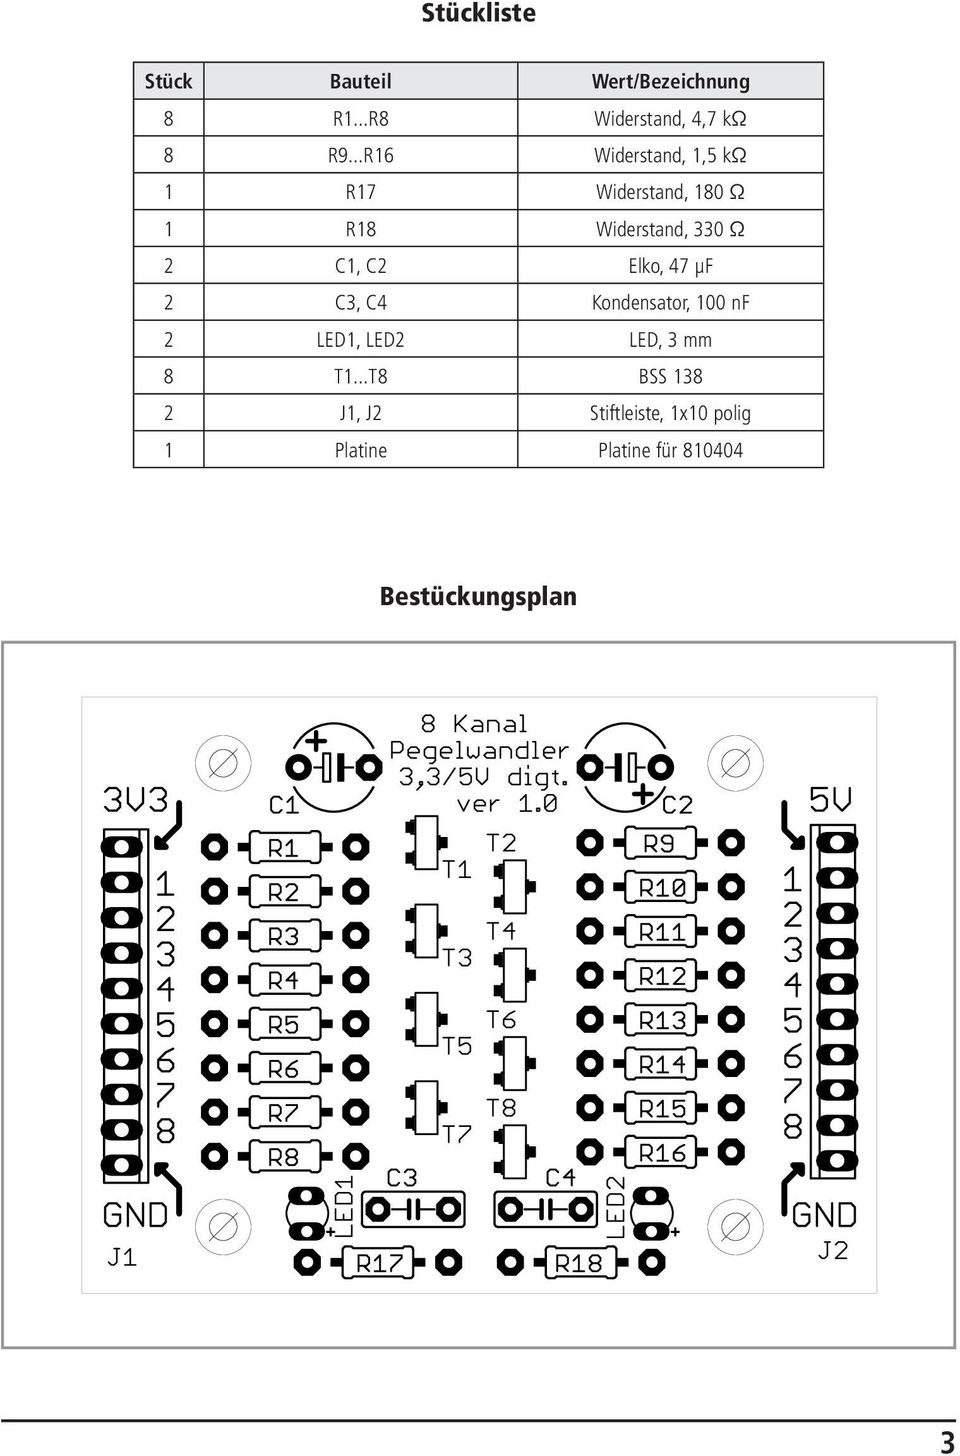 C2 Elko, 47 μf 2 C3, C4 Kondensator, 100 nf 2 LED1, LED2 LED, 3 mm 8 T1.